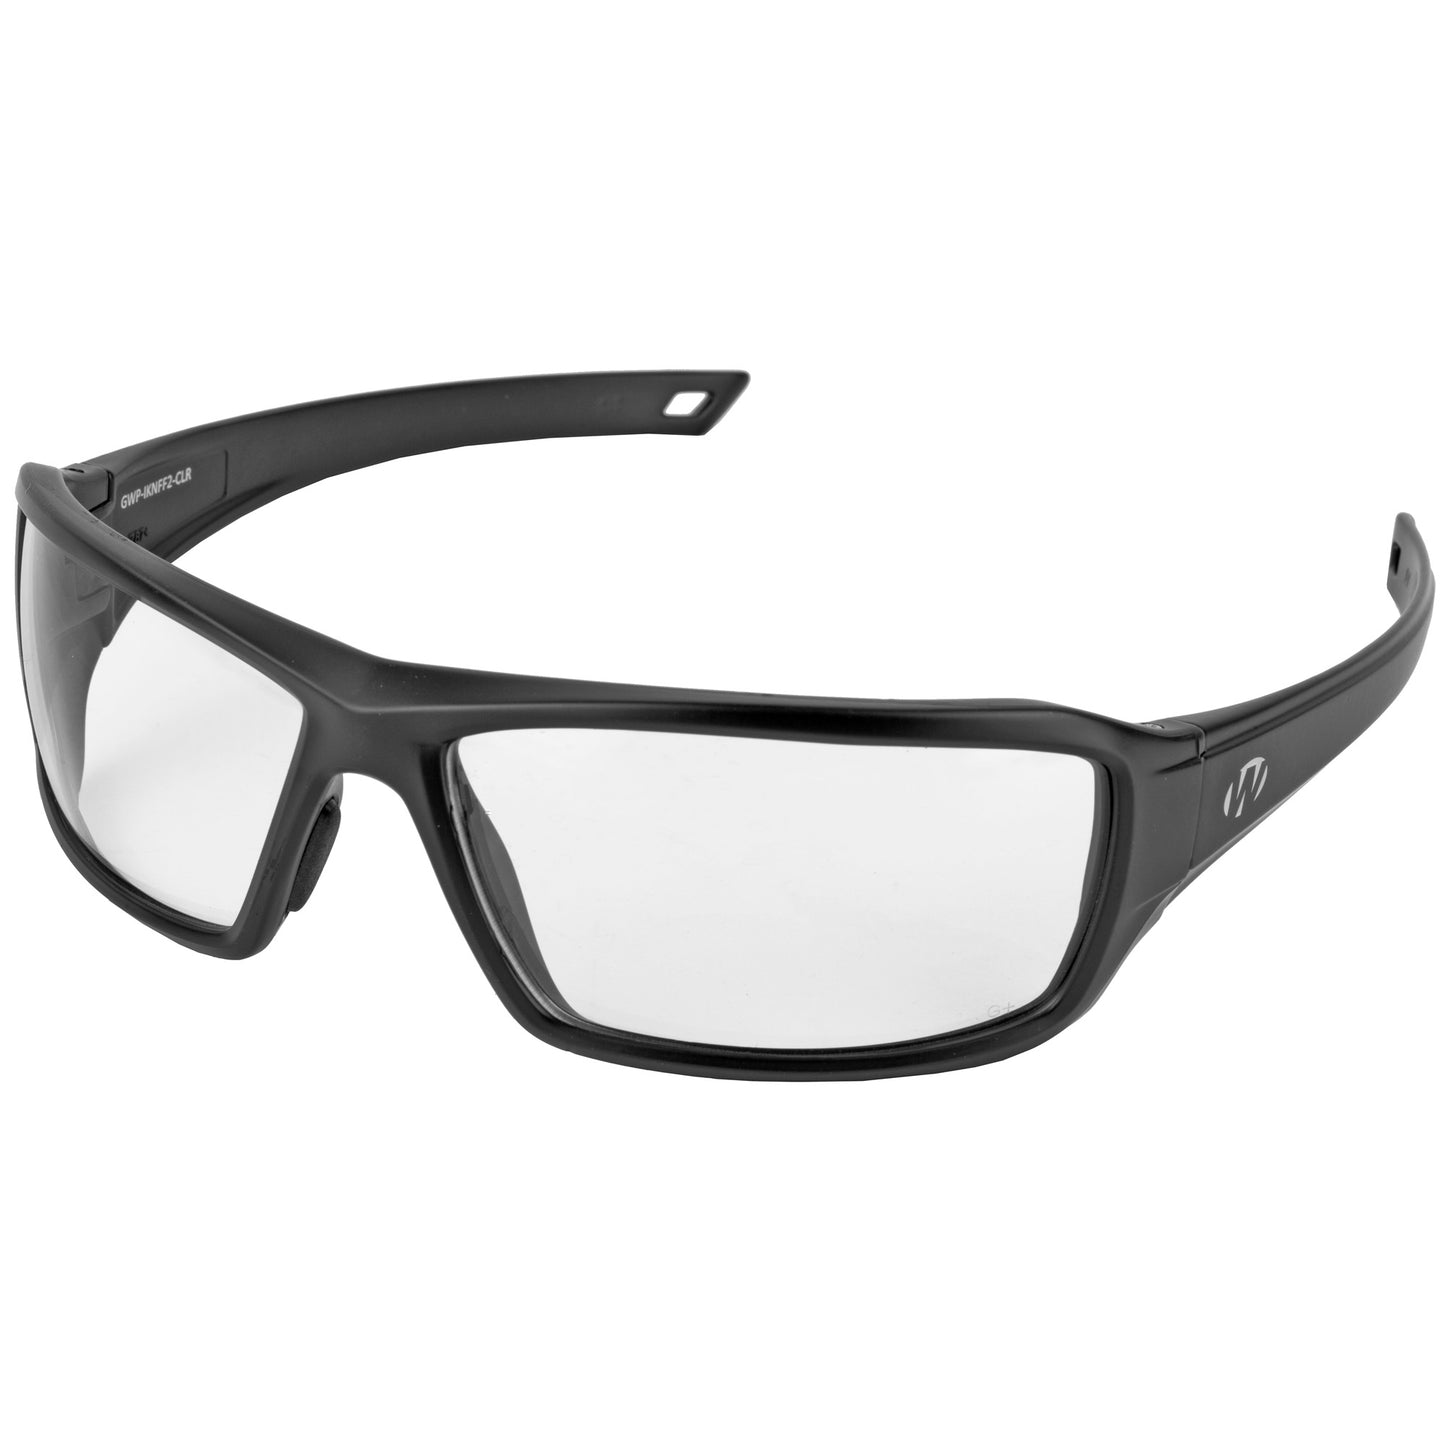 Walker's, IKON, Forge Full Frame Shooting Glasses, Black Frame, Clear Lens